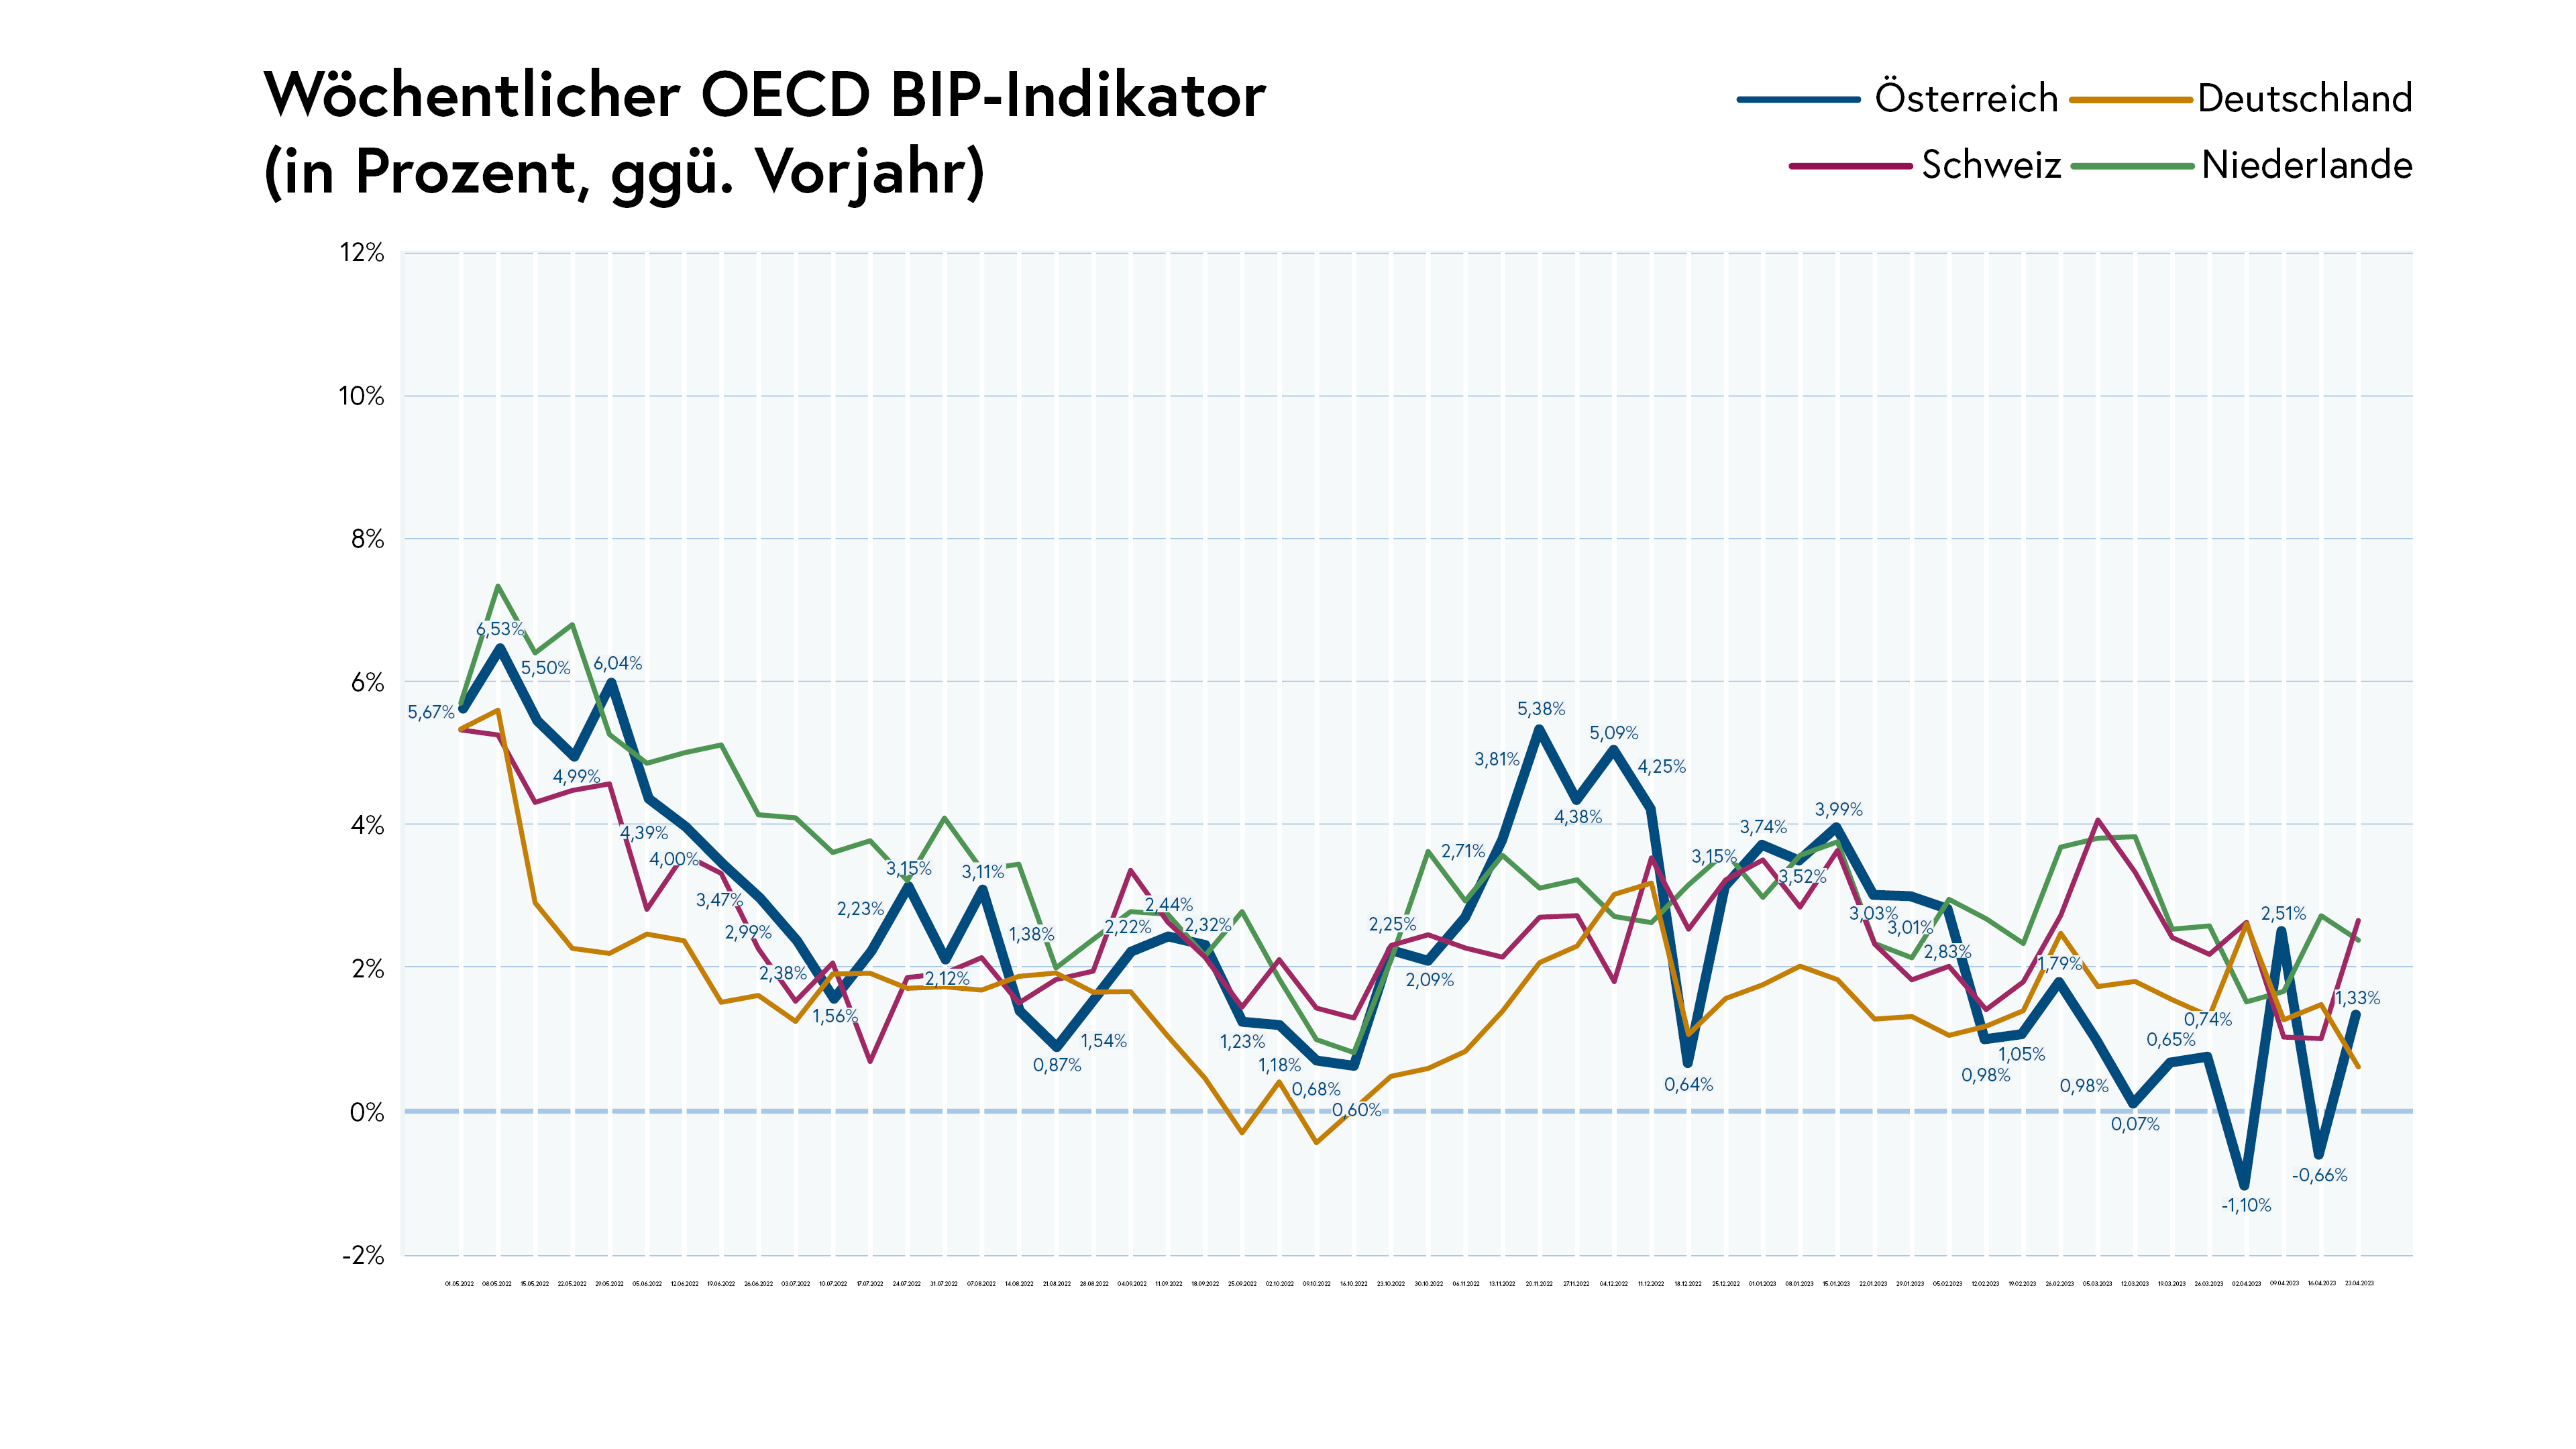 Wöchentlicher OECD BIP-Indikator